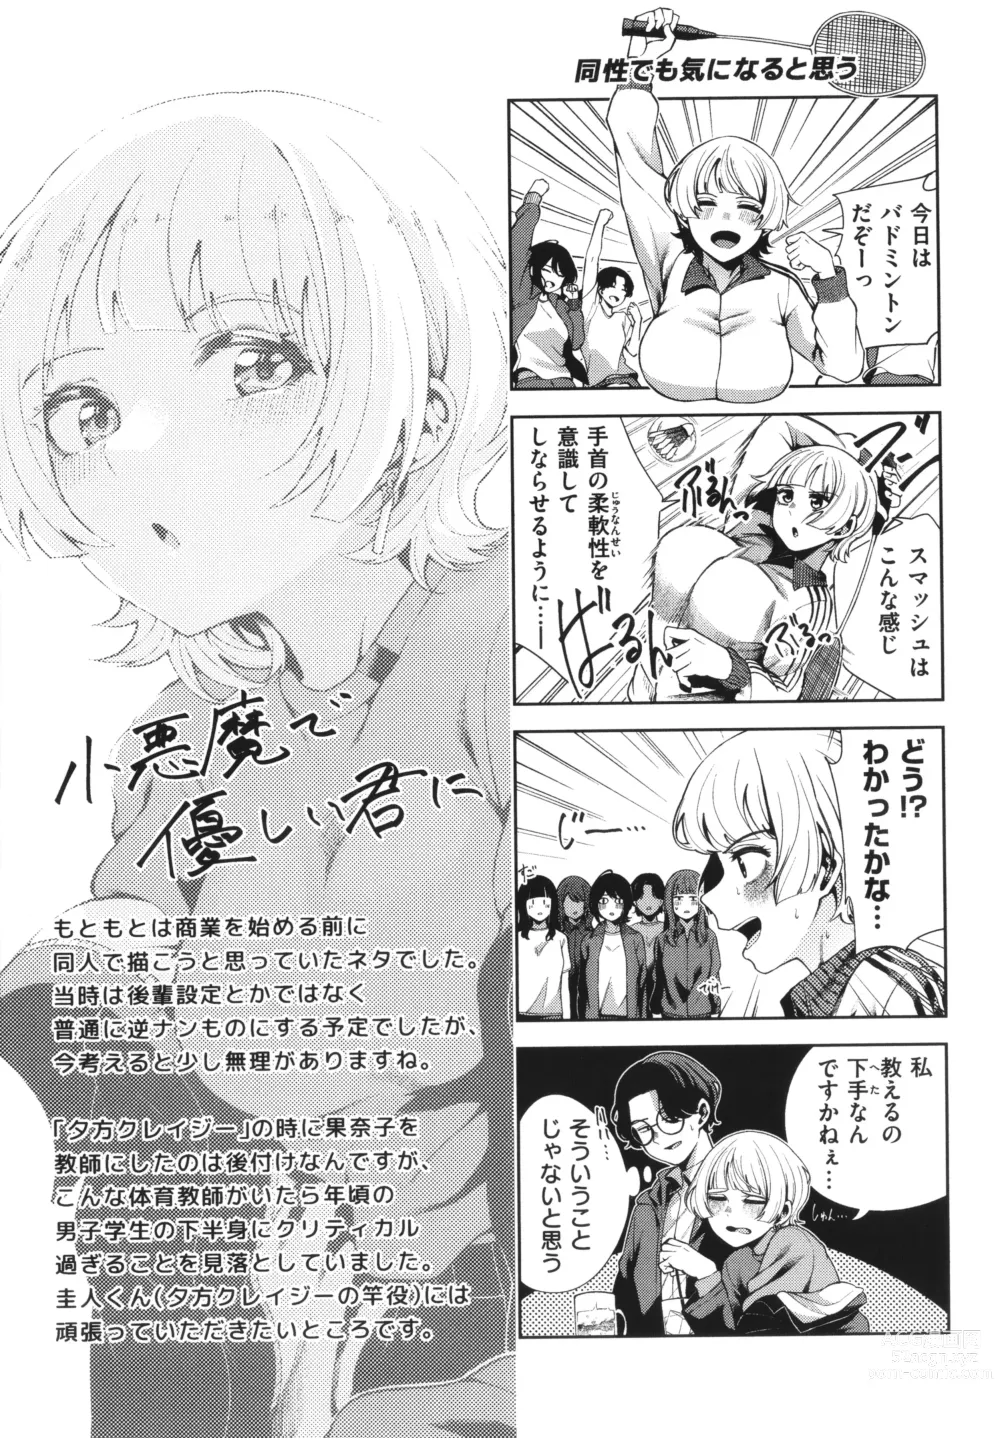 Page 159 of manga Watashi de Sometai